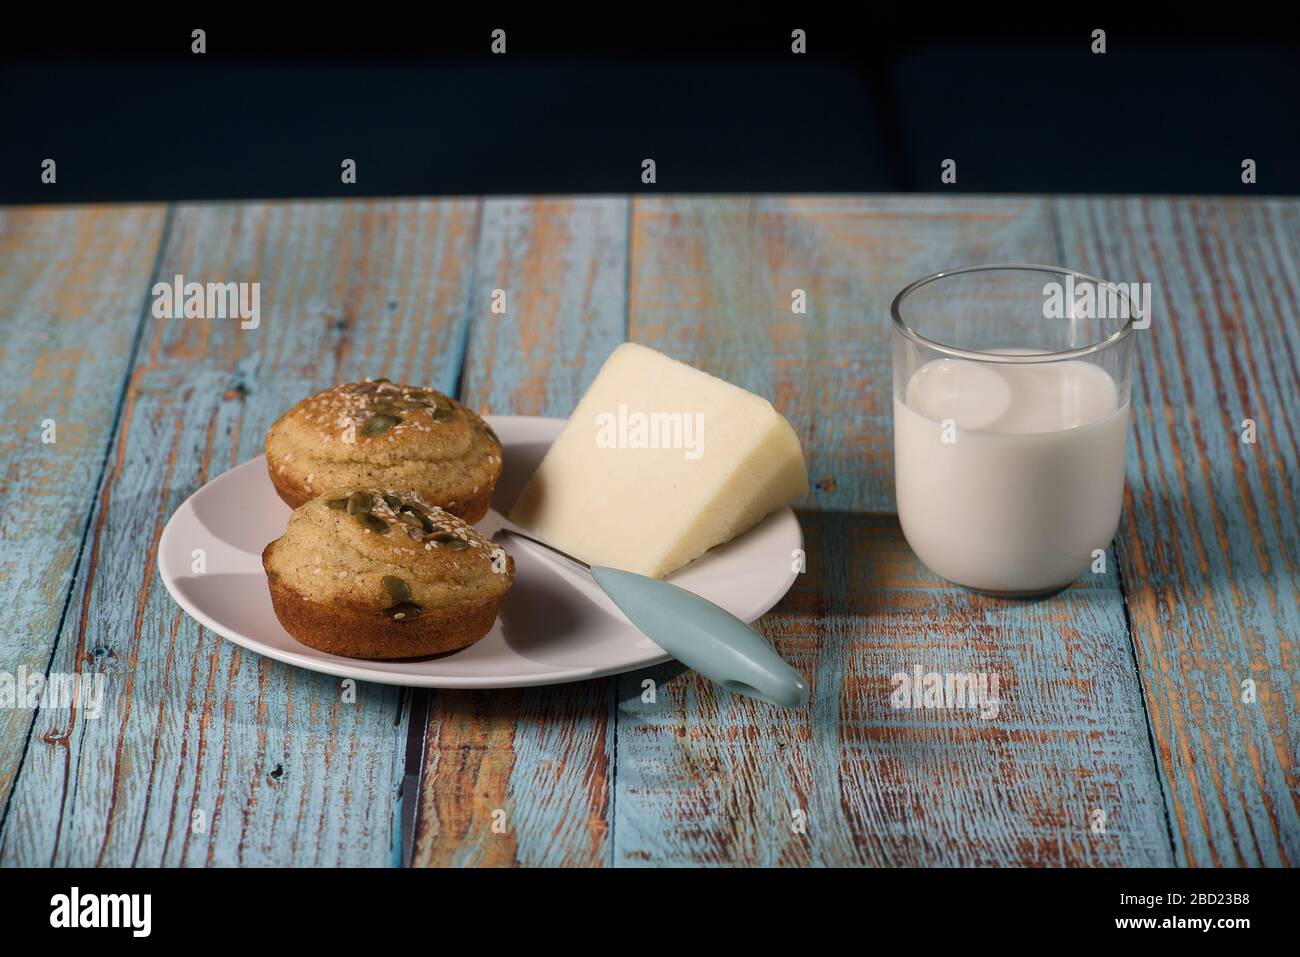 Pane di mais a forma di muffin ( proja ) con semi di sesamo e zucca con formaggio e bicchiere di yogurt. Cucina balcanica. Legno rustico blu Foto Stock